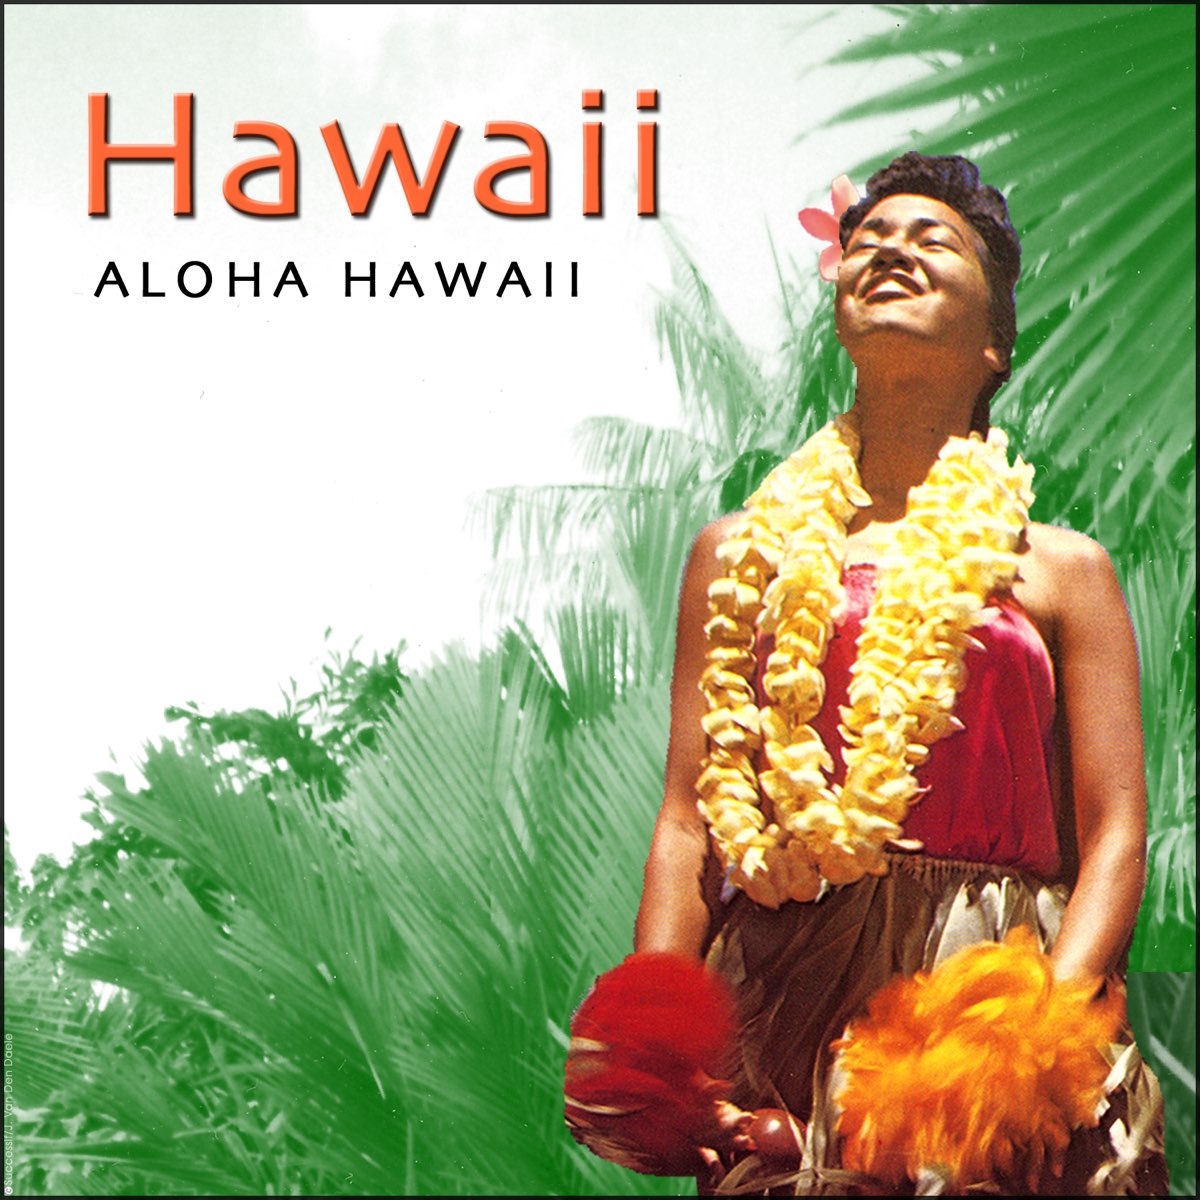 Гавайи музыка. Гавайи песни. Aloha Hawaii песня. Песня про Гавайи. Король музыки Гавайи.